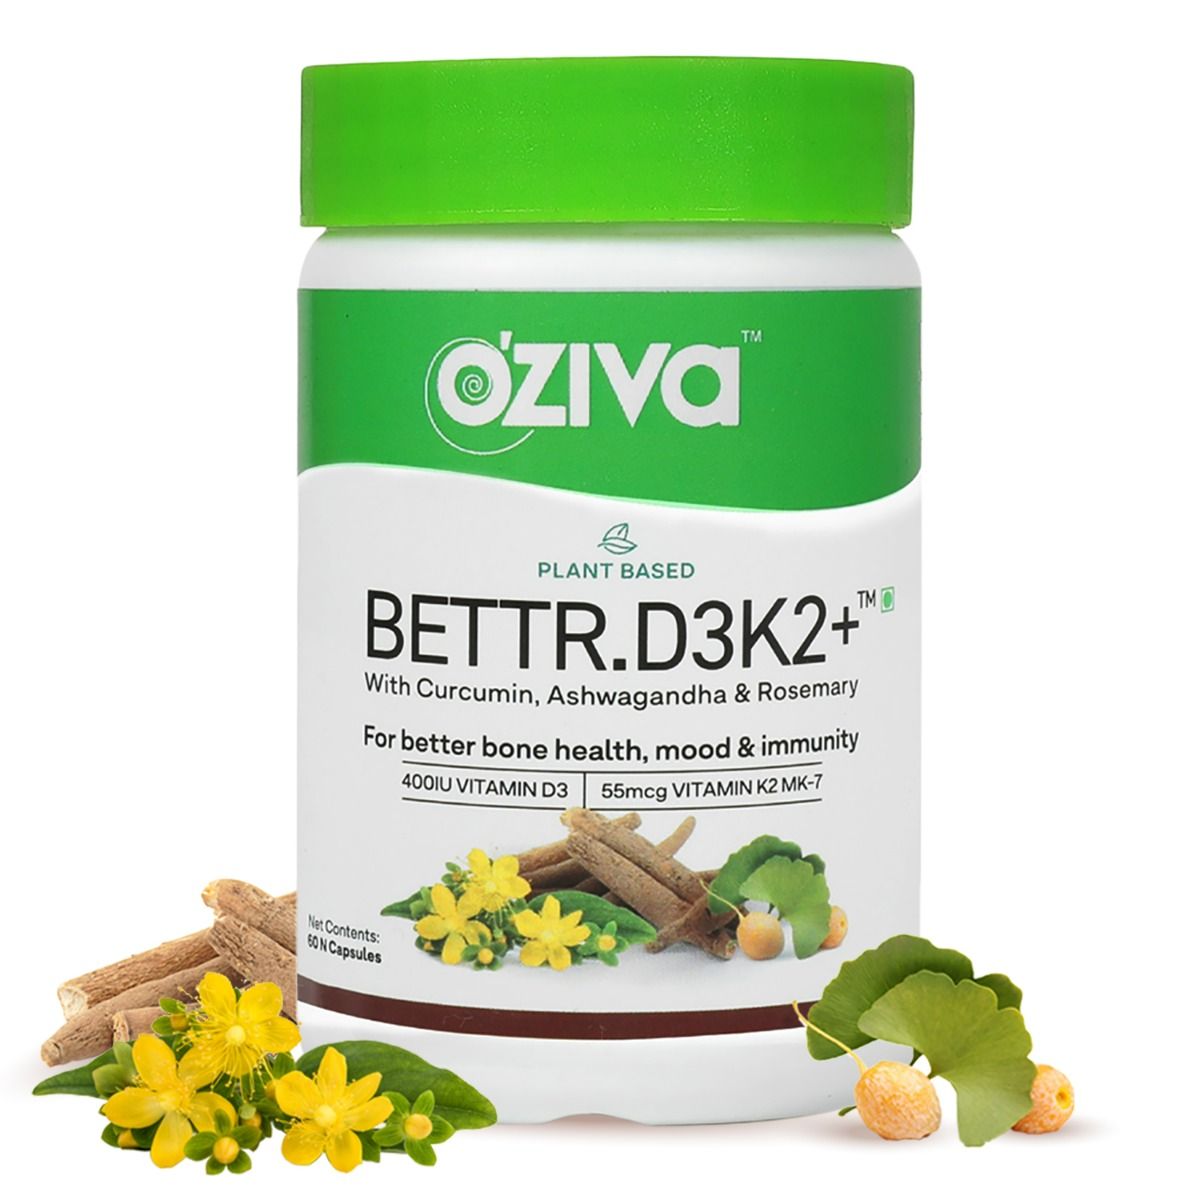 Buy OZiva Bettr.D3K2+, 60 Capsules Online